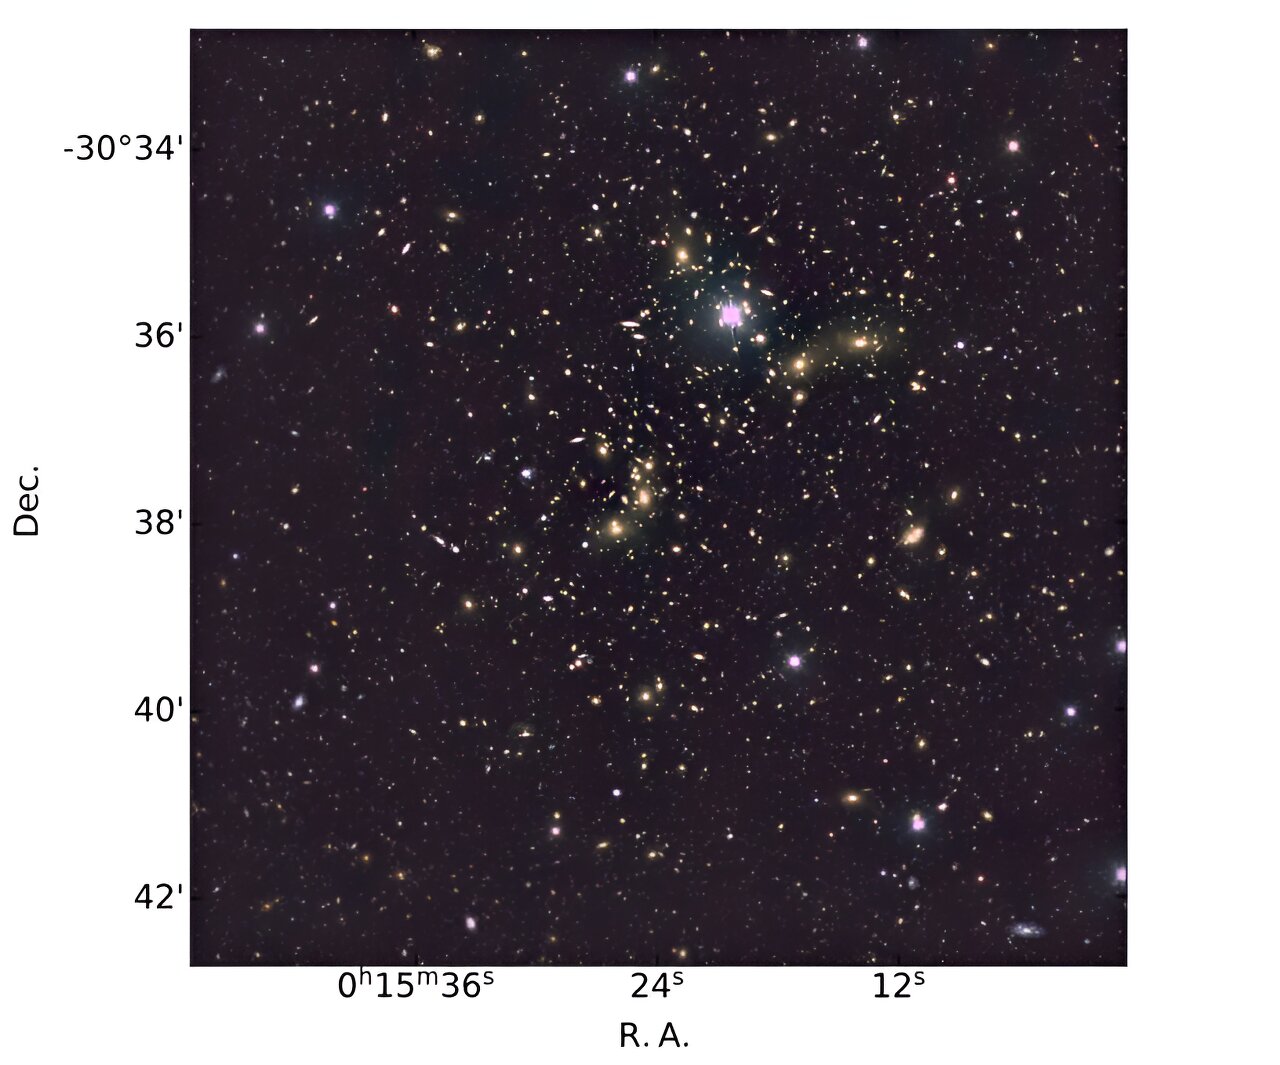 С помощью Магеллановых телескопов в Чили итальянские астрономы наблюдали гигантское скопление галактик, известное как Abell 2744, получившее название Скопление Пандоры